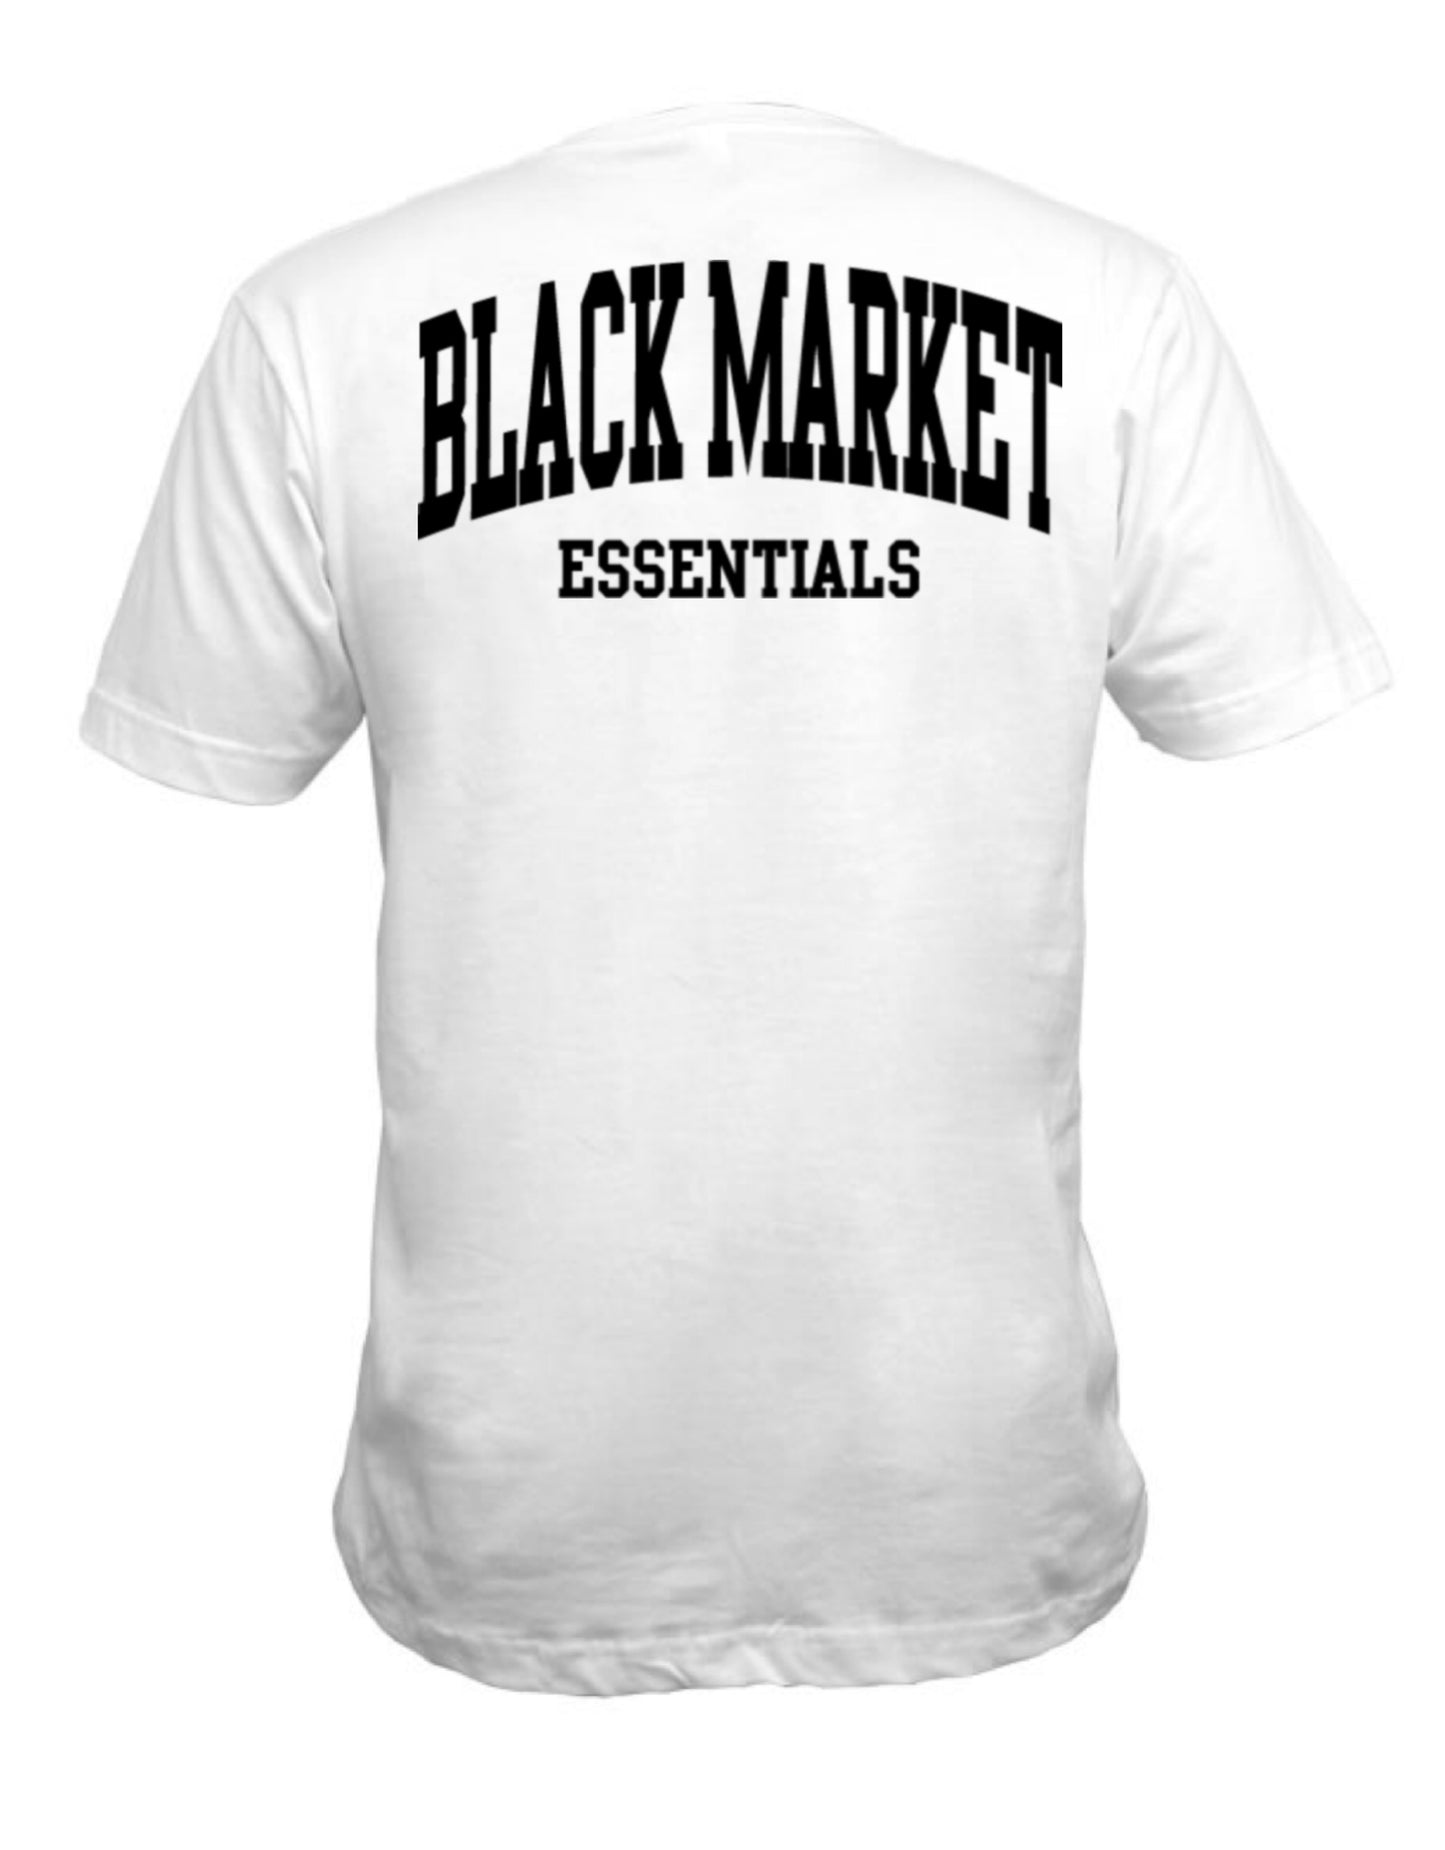 Black Market Essentials unisex t-shirt